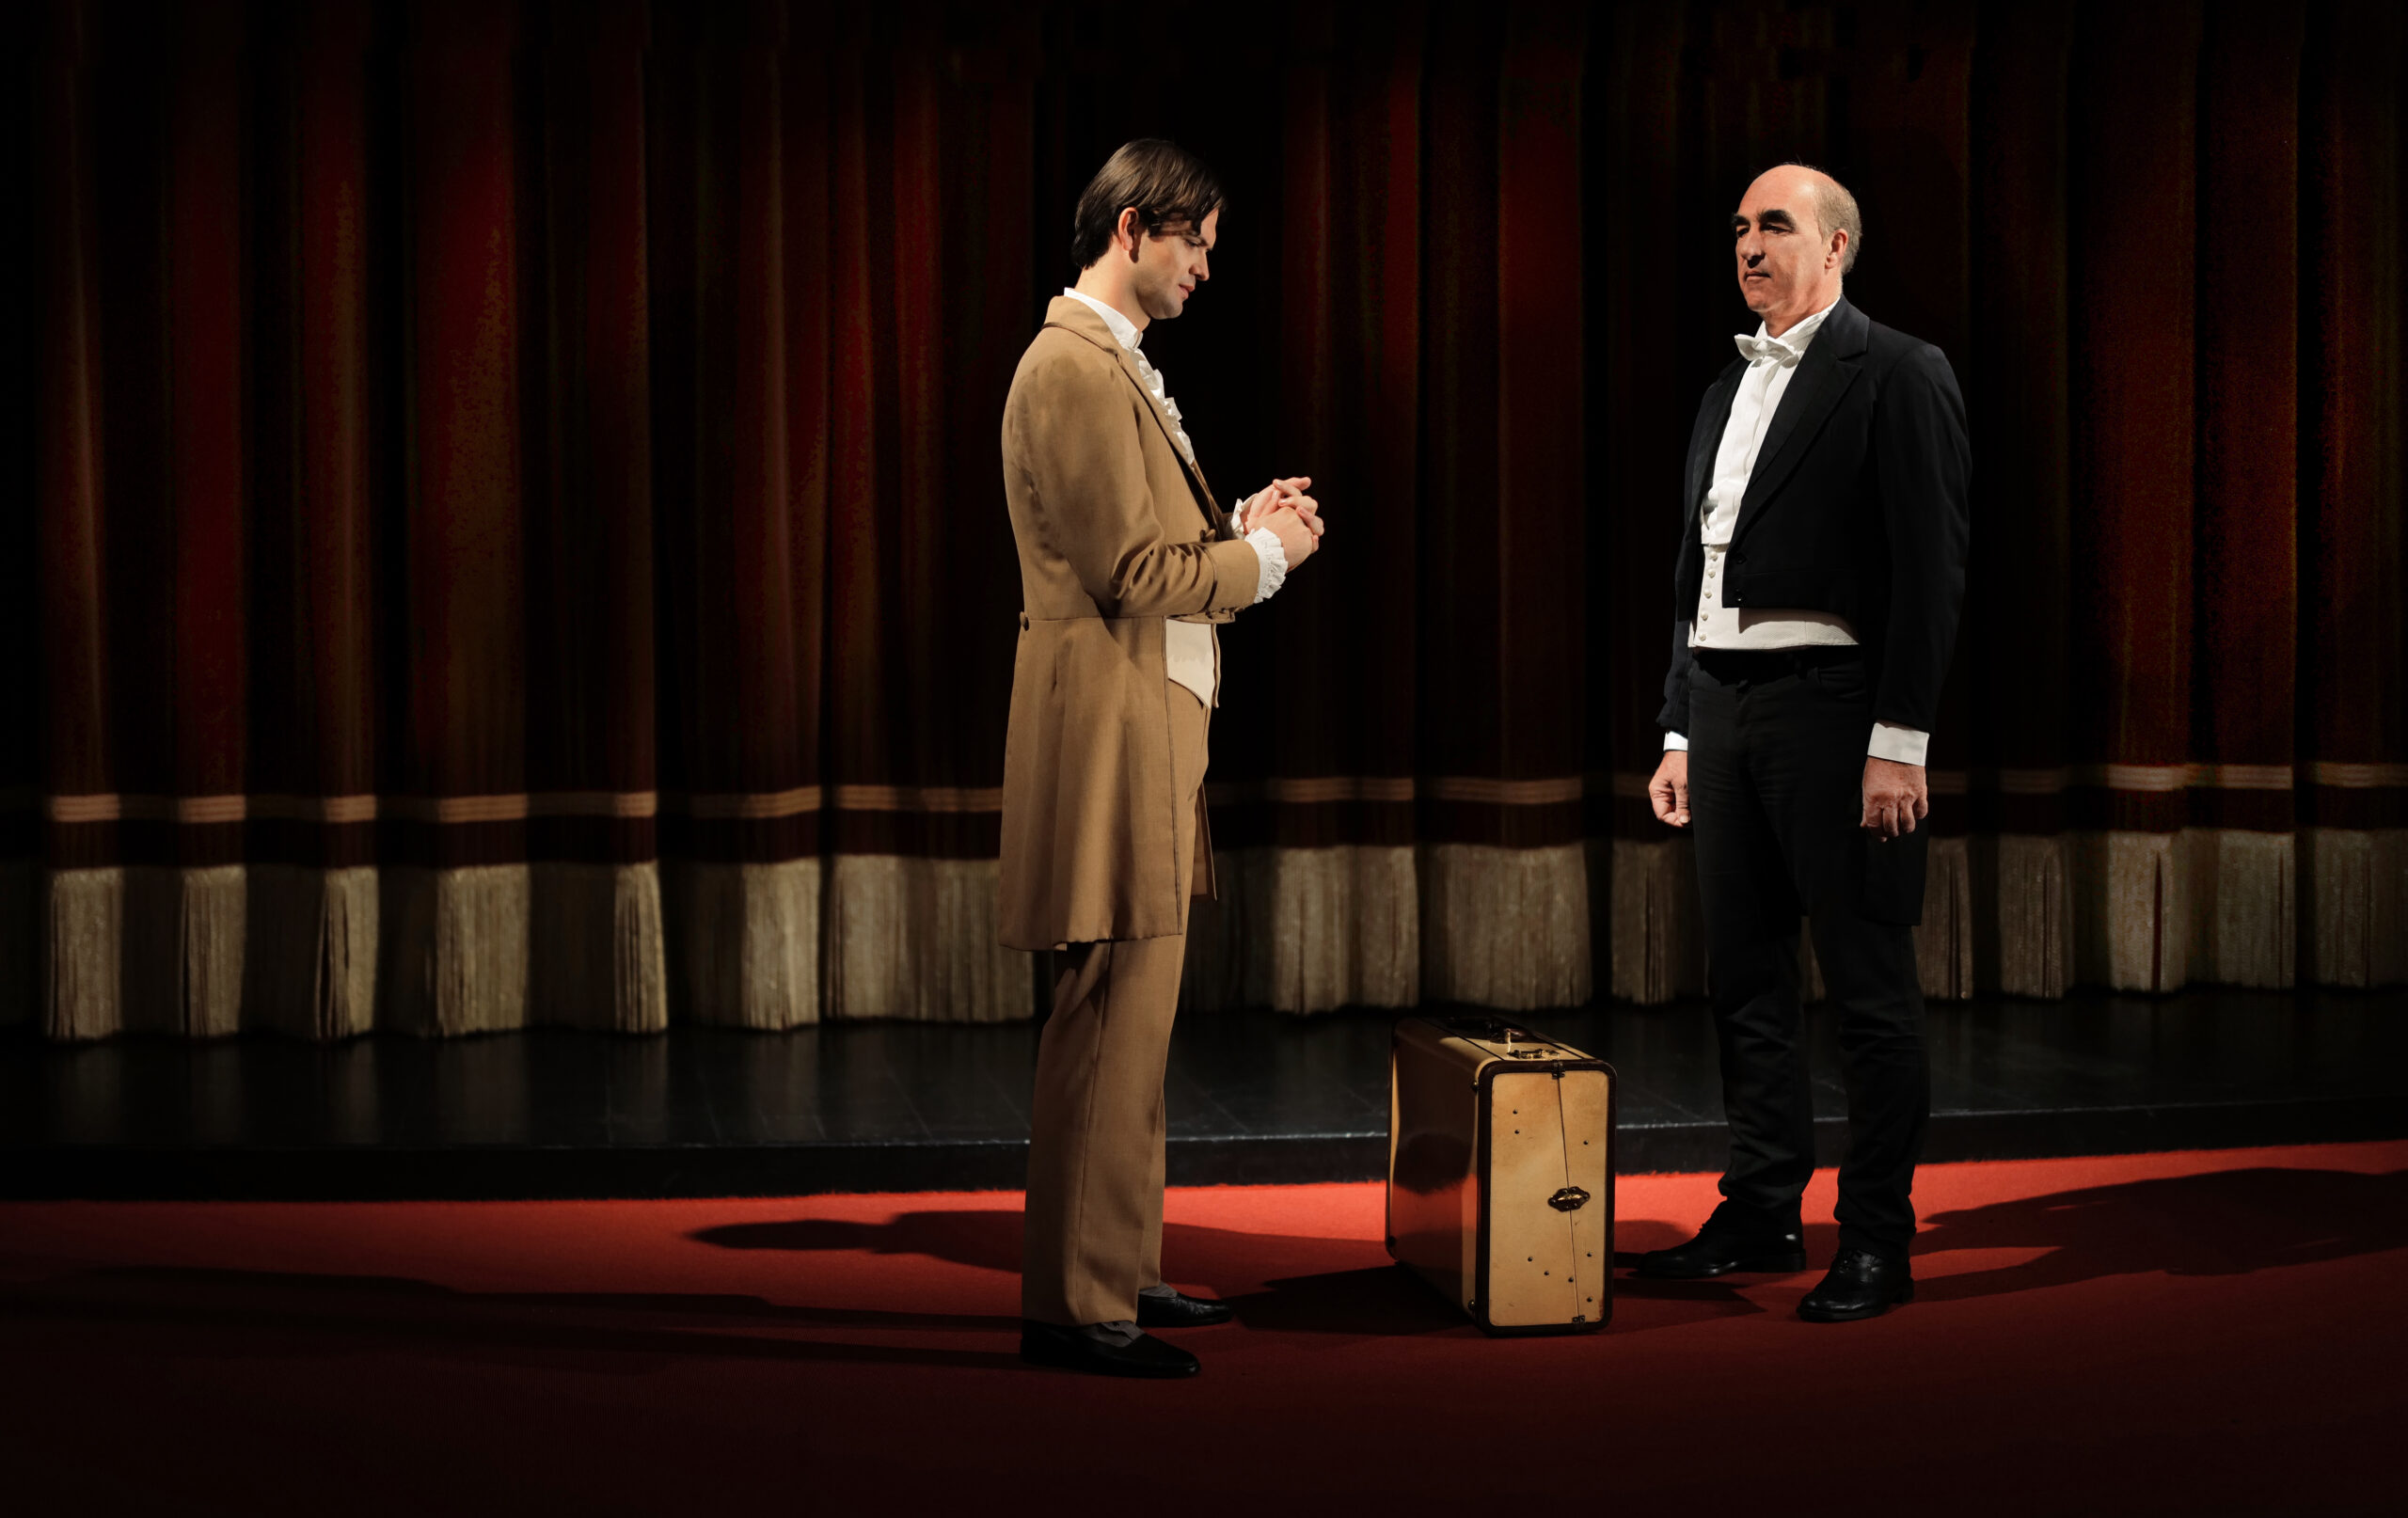 Presentato  a Teatro Puccini il cortometraggio “Merano va in scena”: prodotto da Anam Cara e diretto dallo sceneggiatore e regista Carlo Guttadauro, foto da comunicato stampa